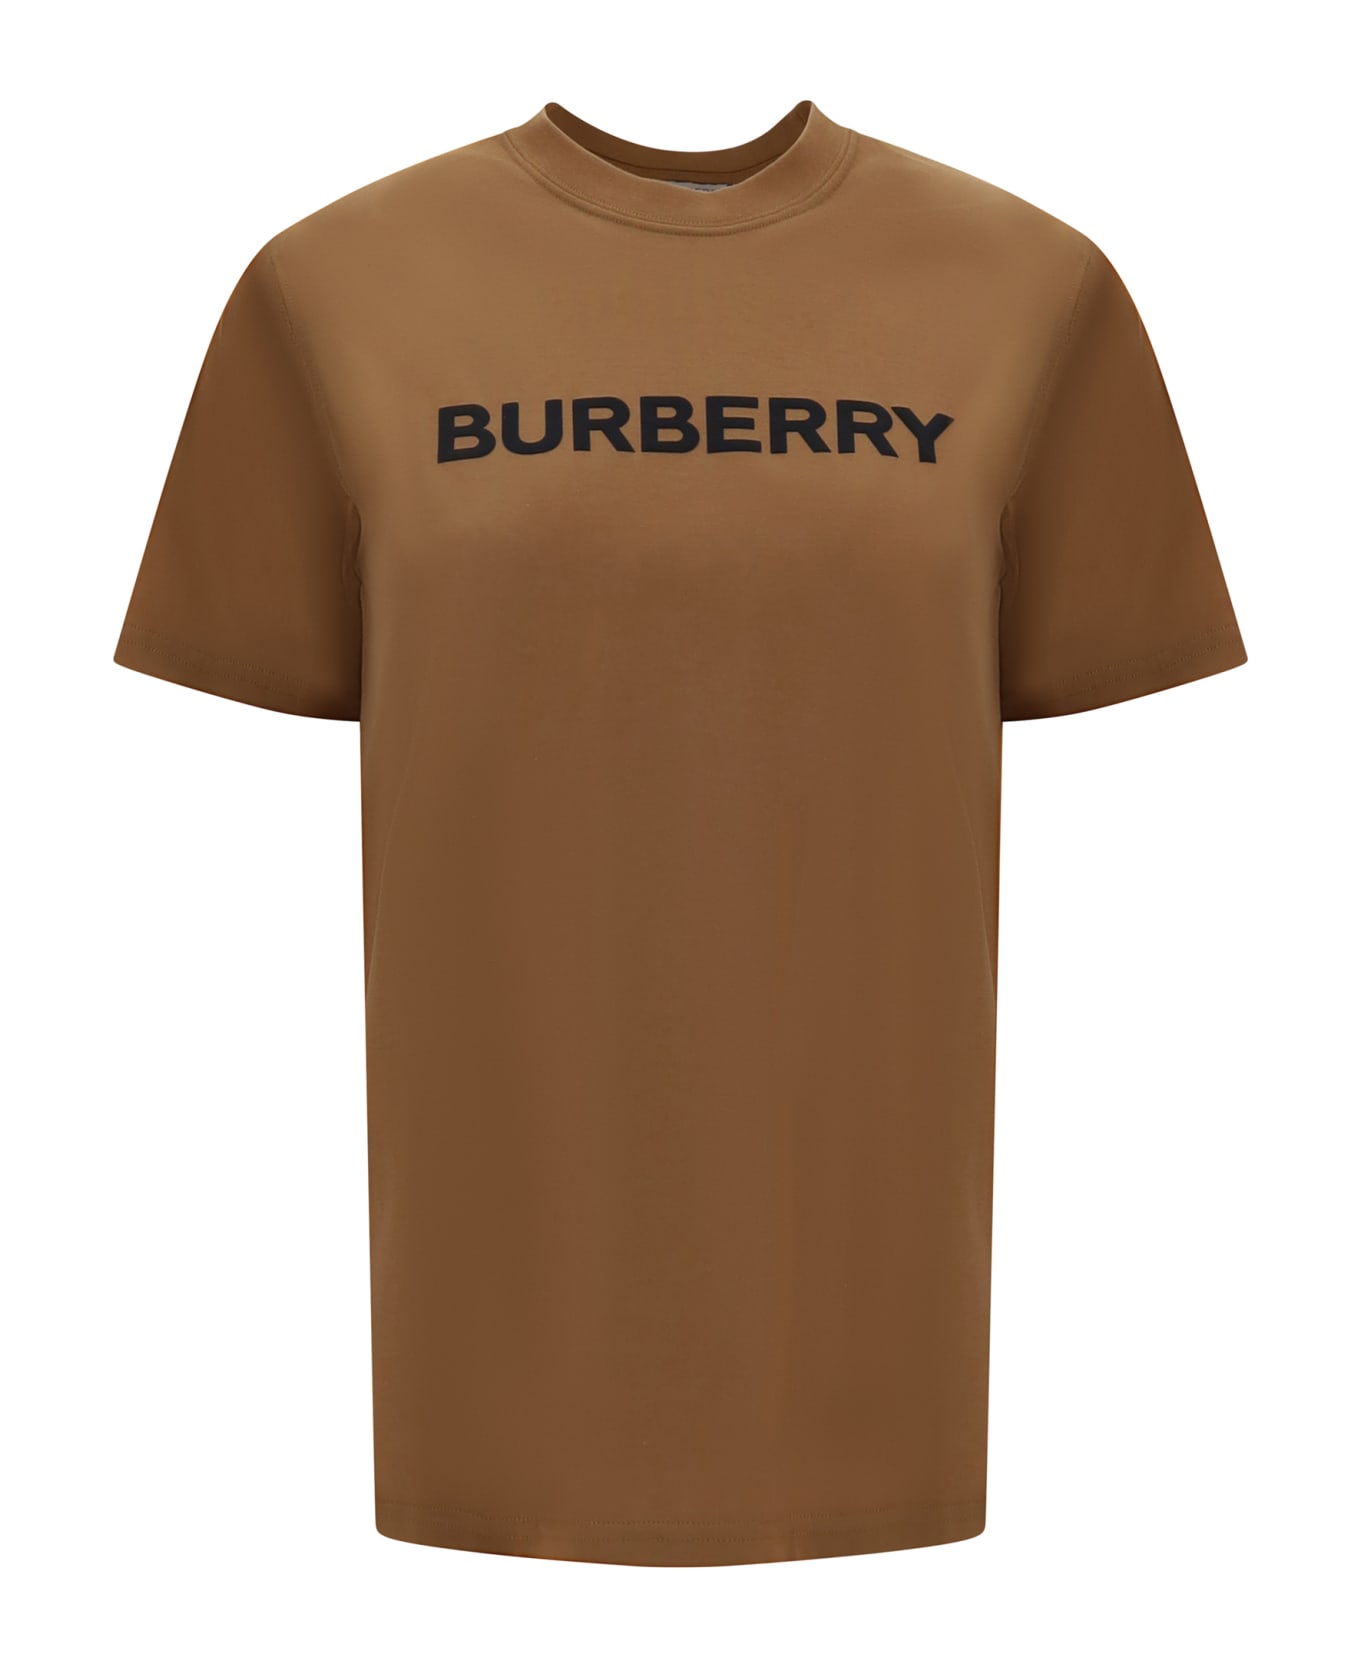 Burberry Margot T-shirt - BROWN Tシャツ